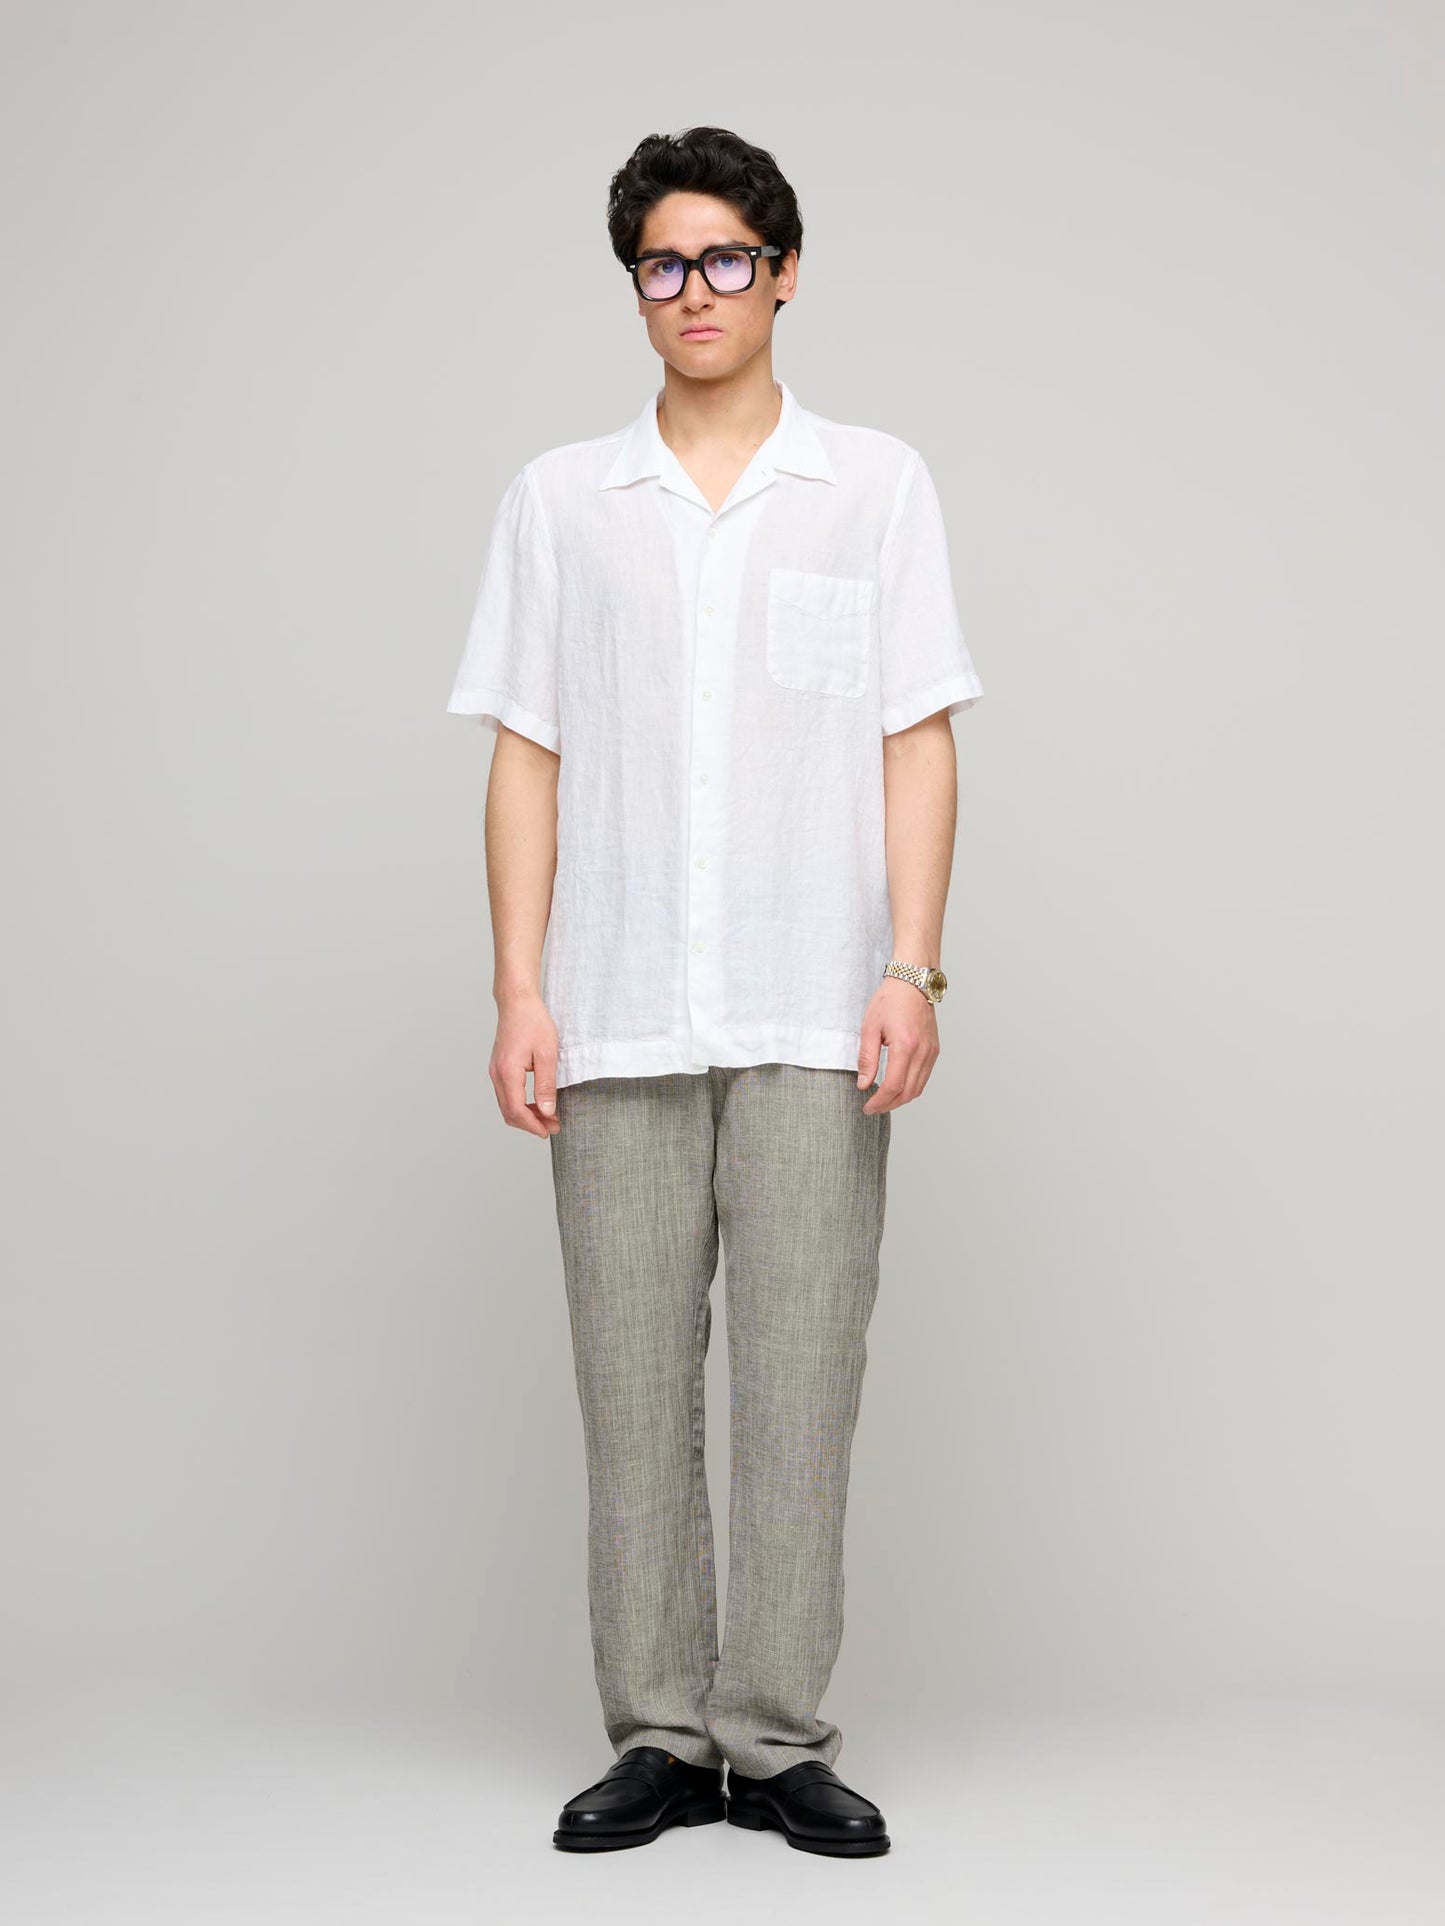 Venice Cuban Collar Short Sleeve Linen Shirt, White